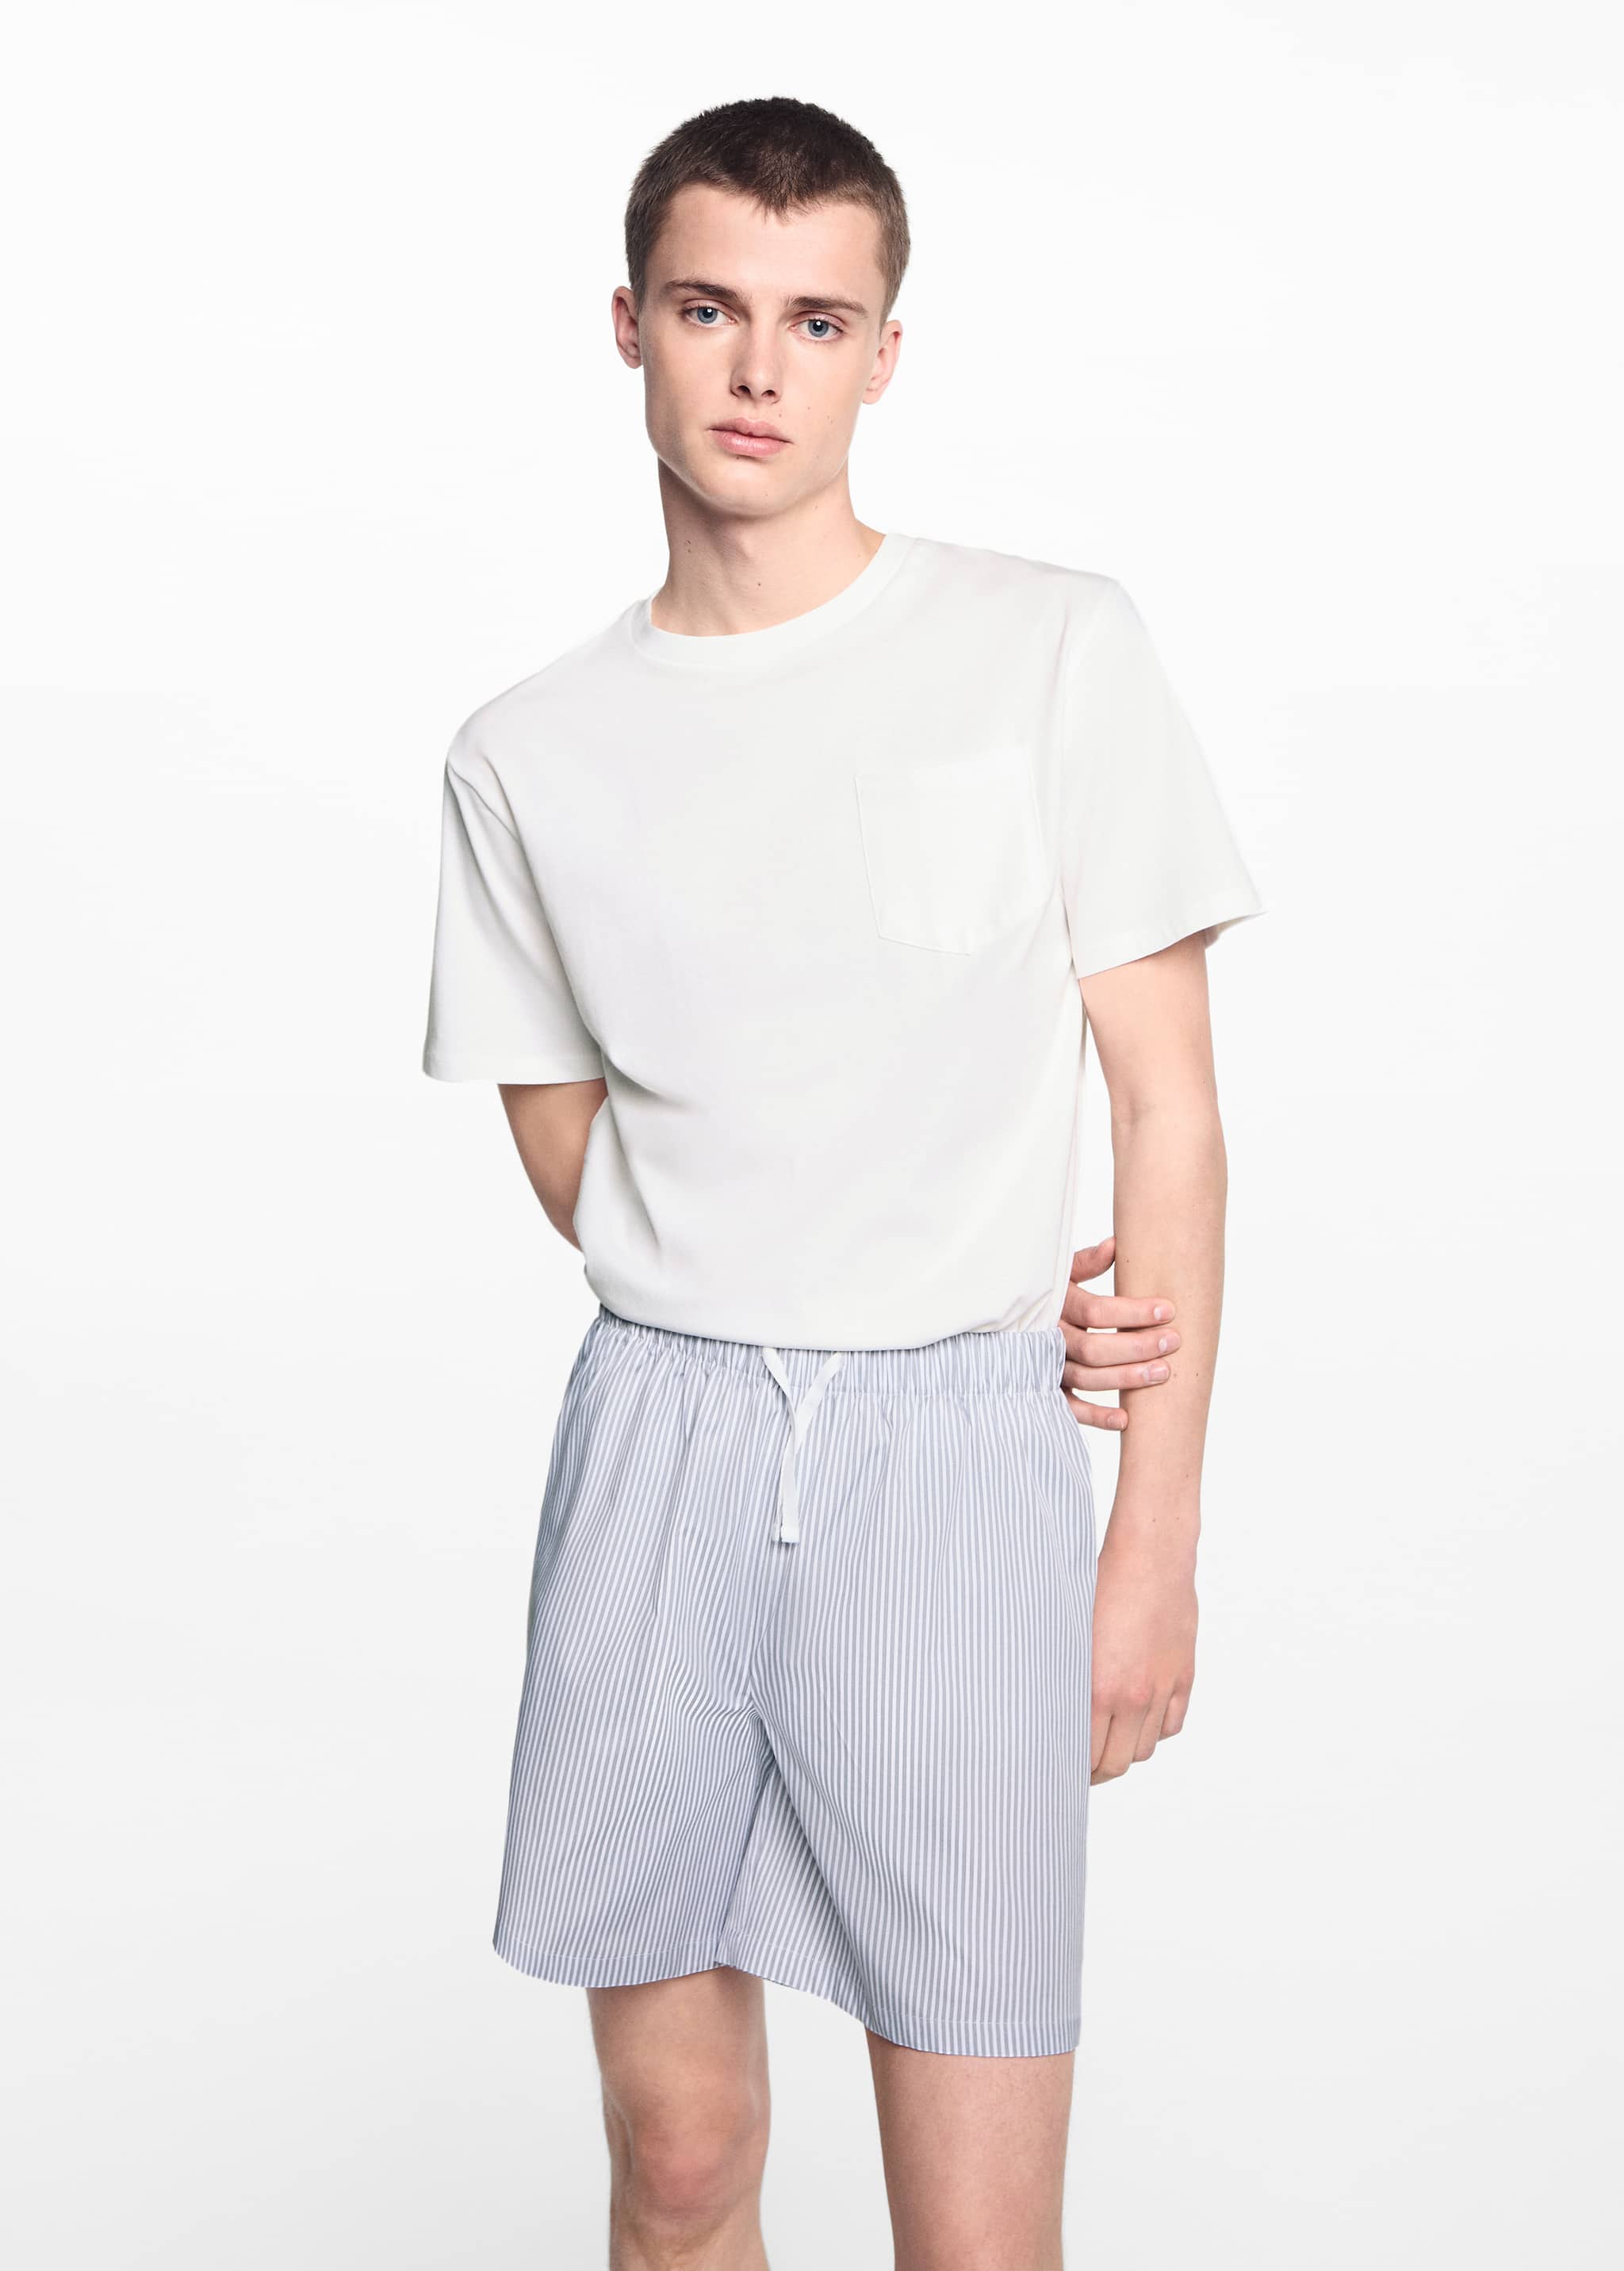 Pijama corto algodón rayas - Plano medio